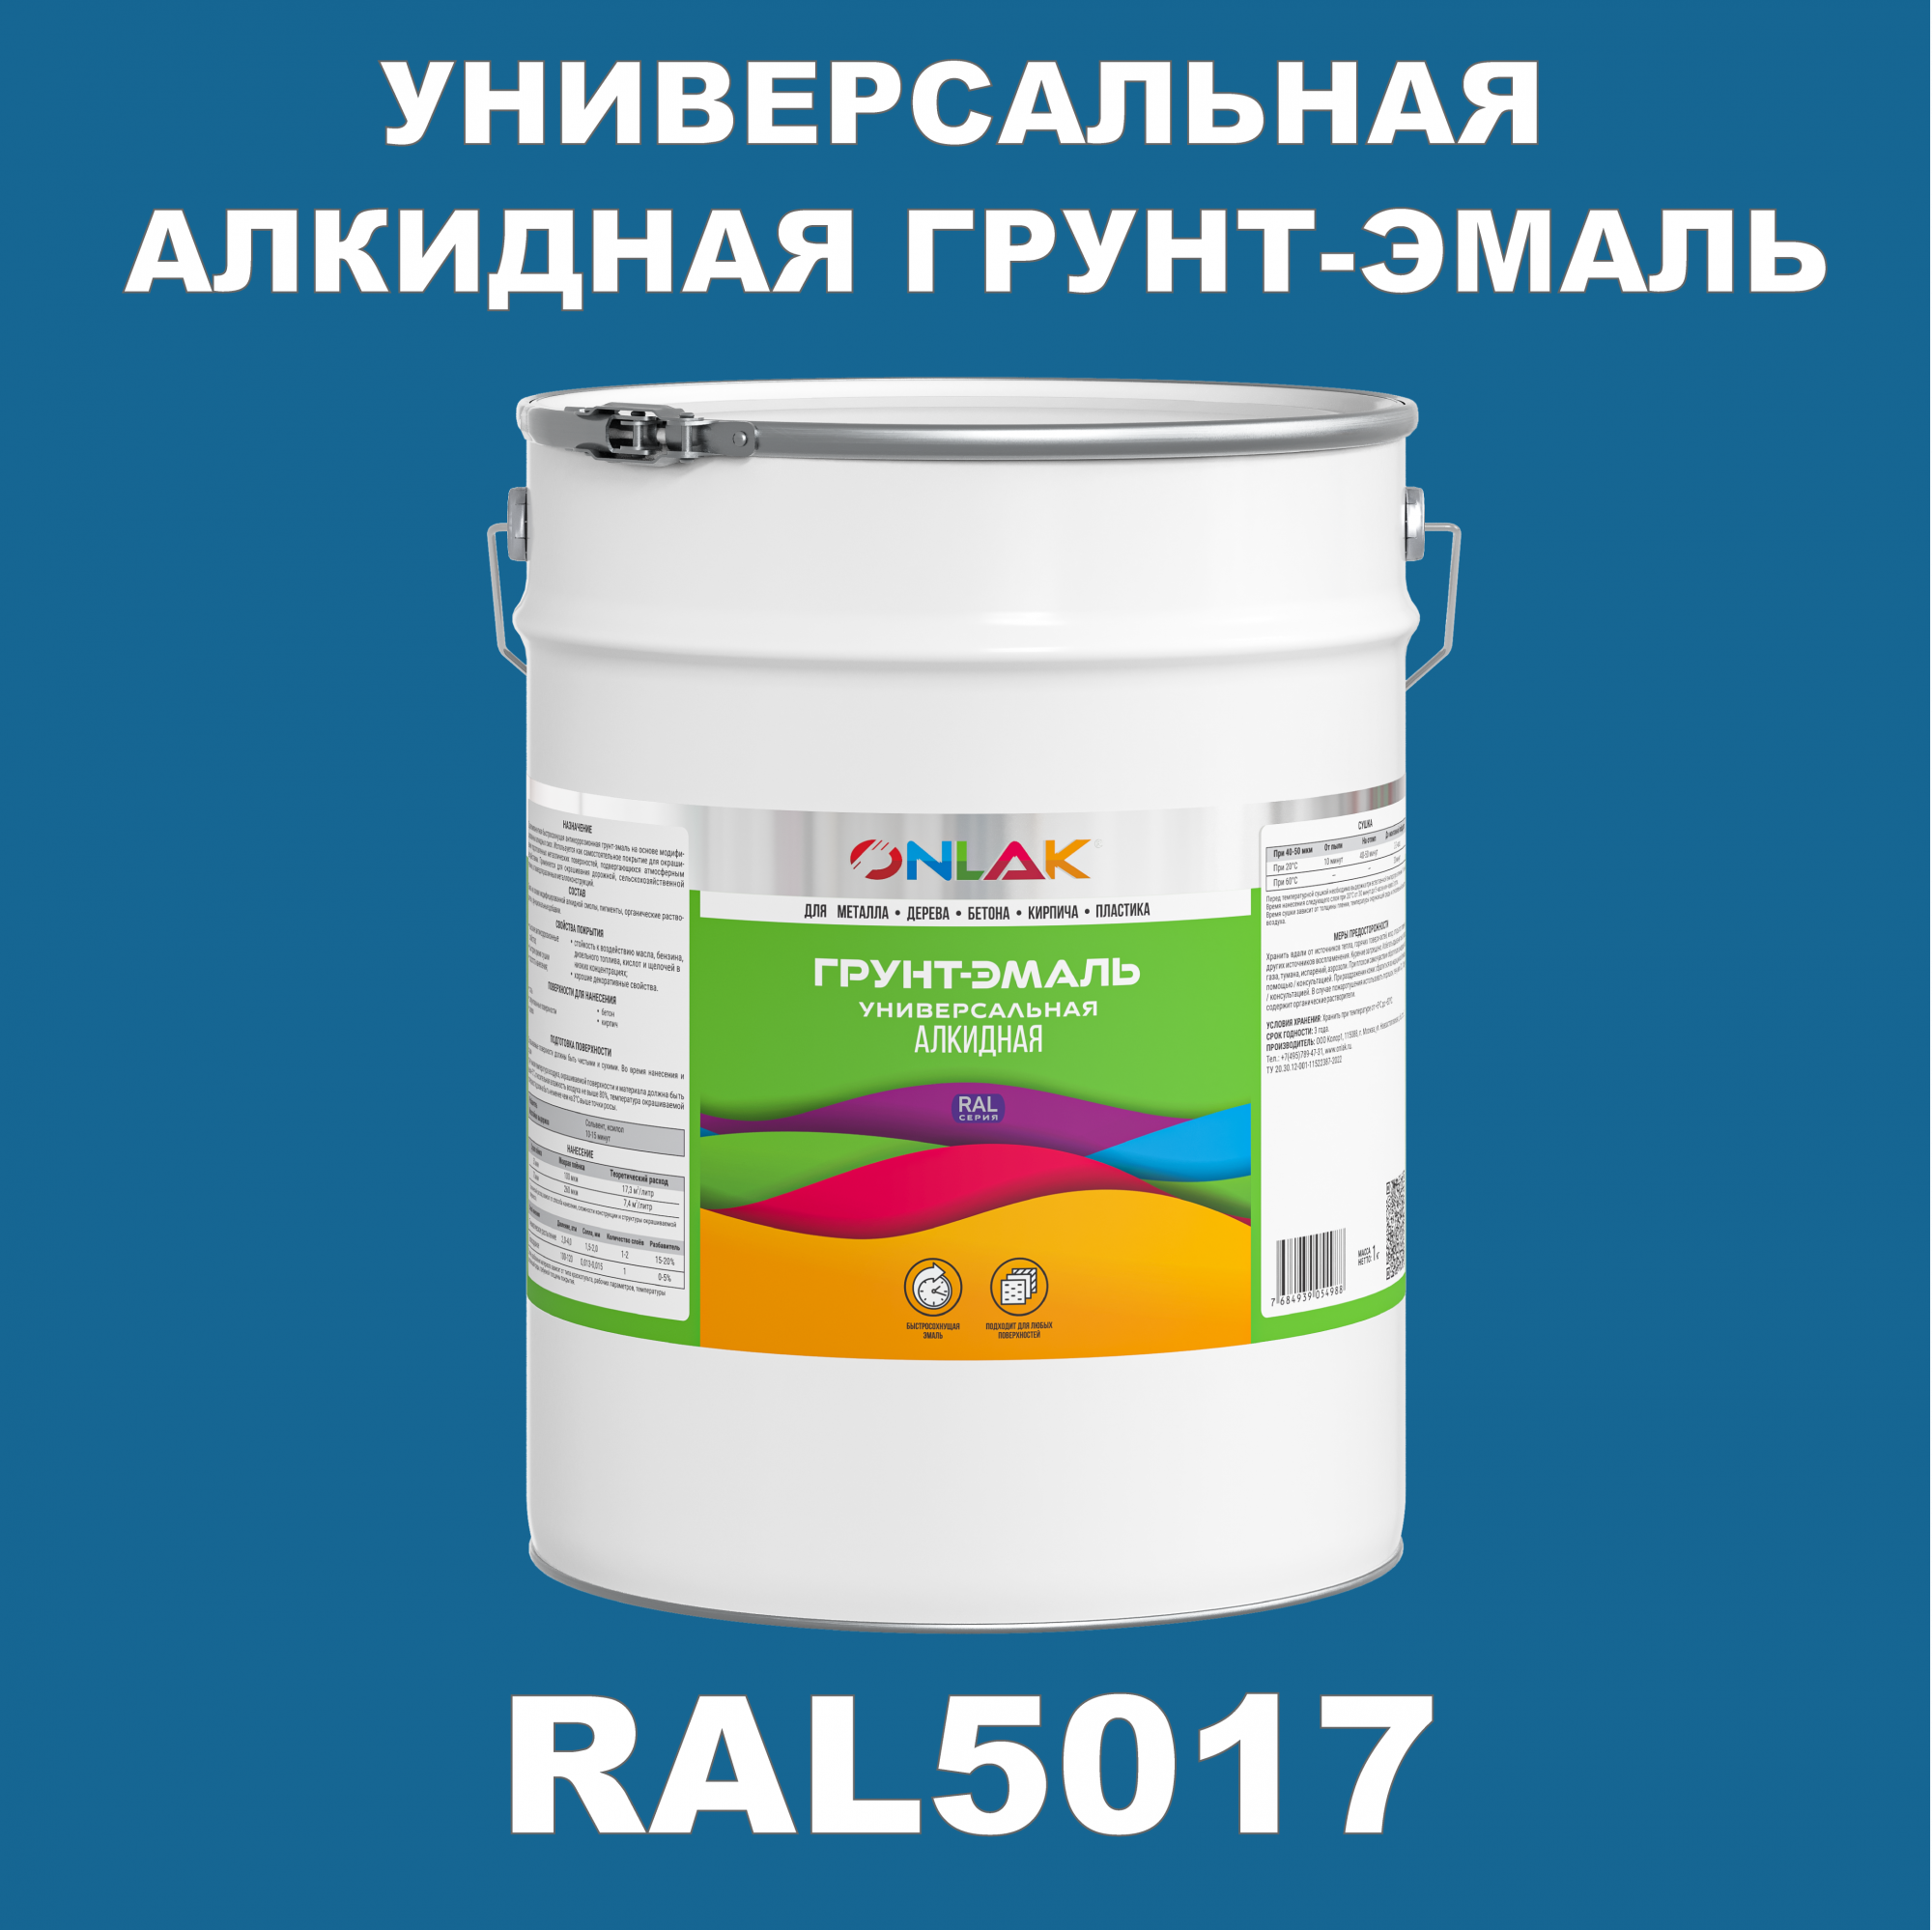 Грунт-эмаль ONLAK 1К RAL5017 антикоррозионная алкидная по металлу по ржавчине 20 кг